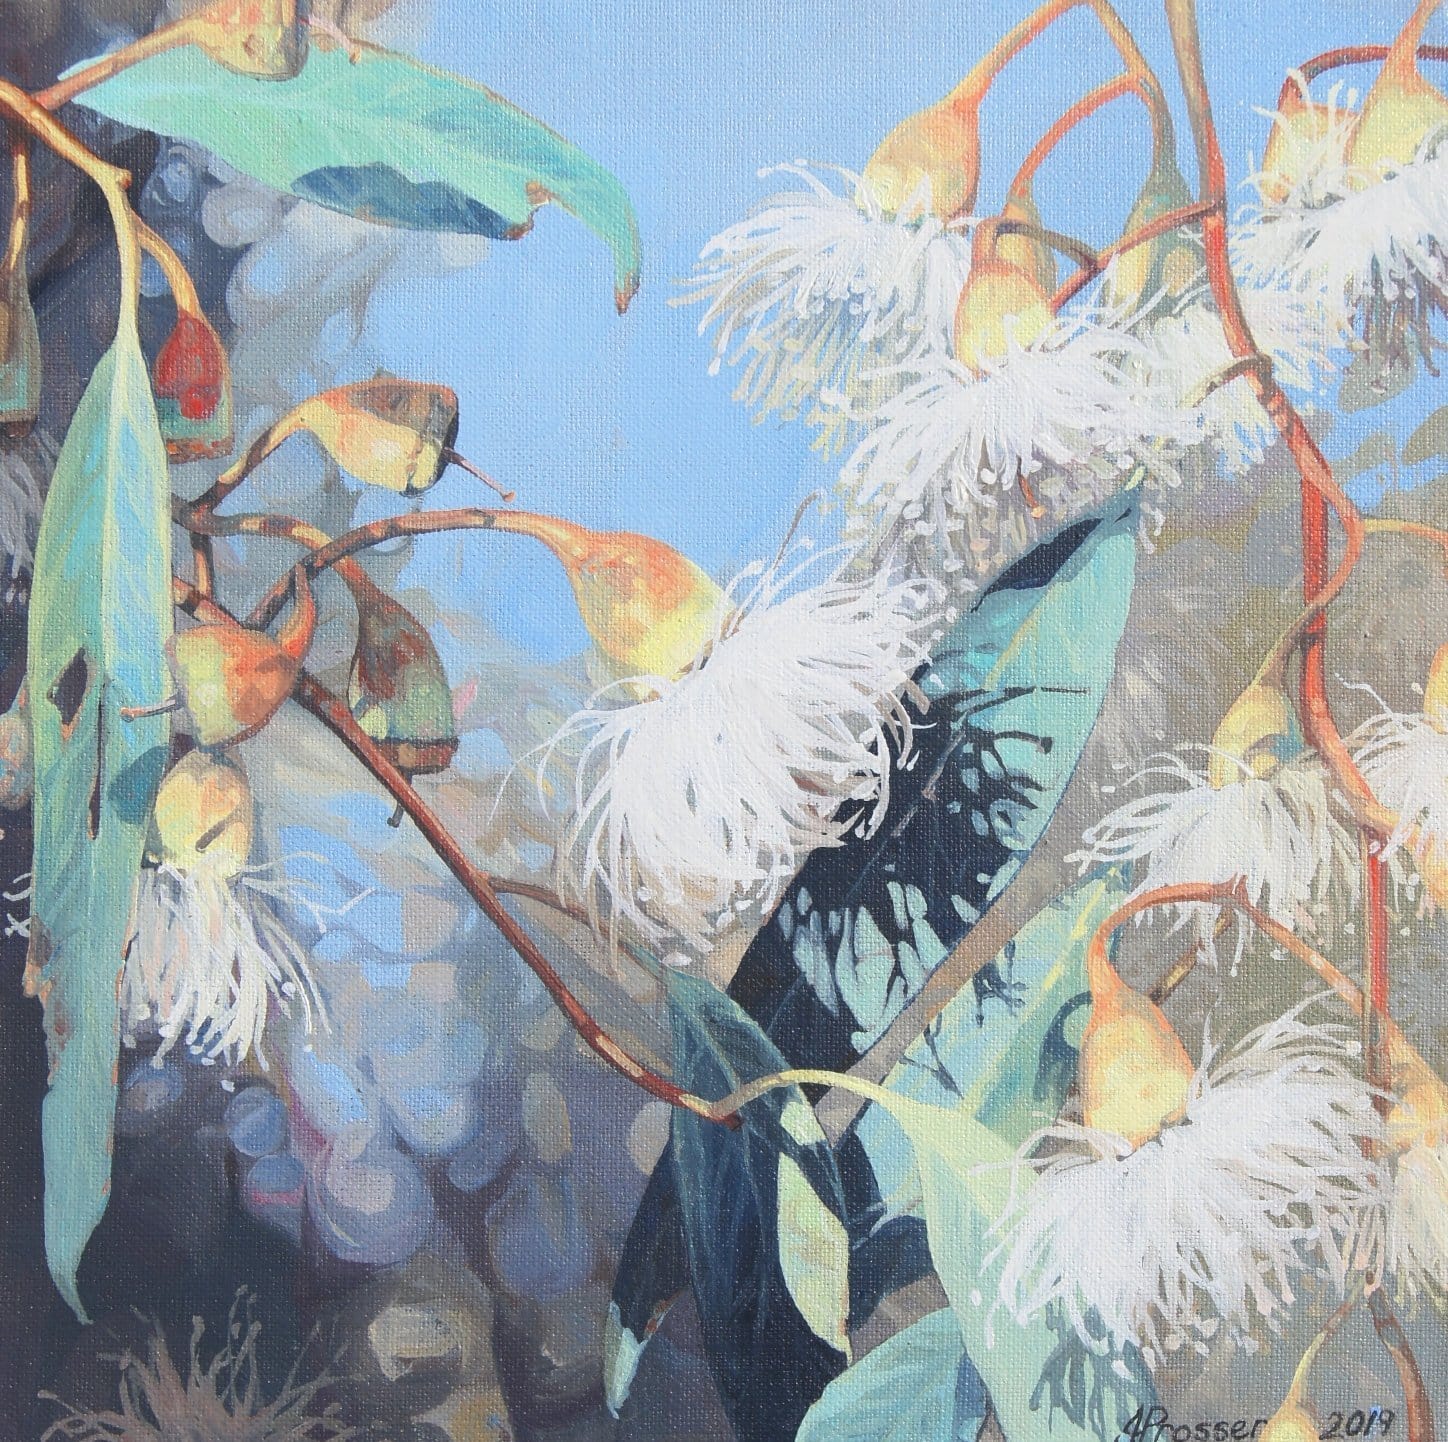 AUSTRALIAN ART - White Gum Flowers by Jaime Prosser